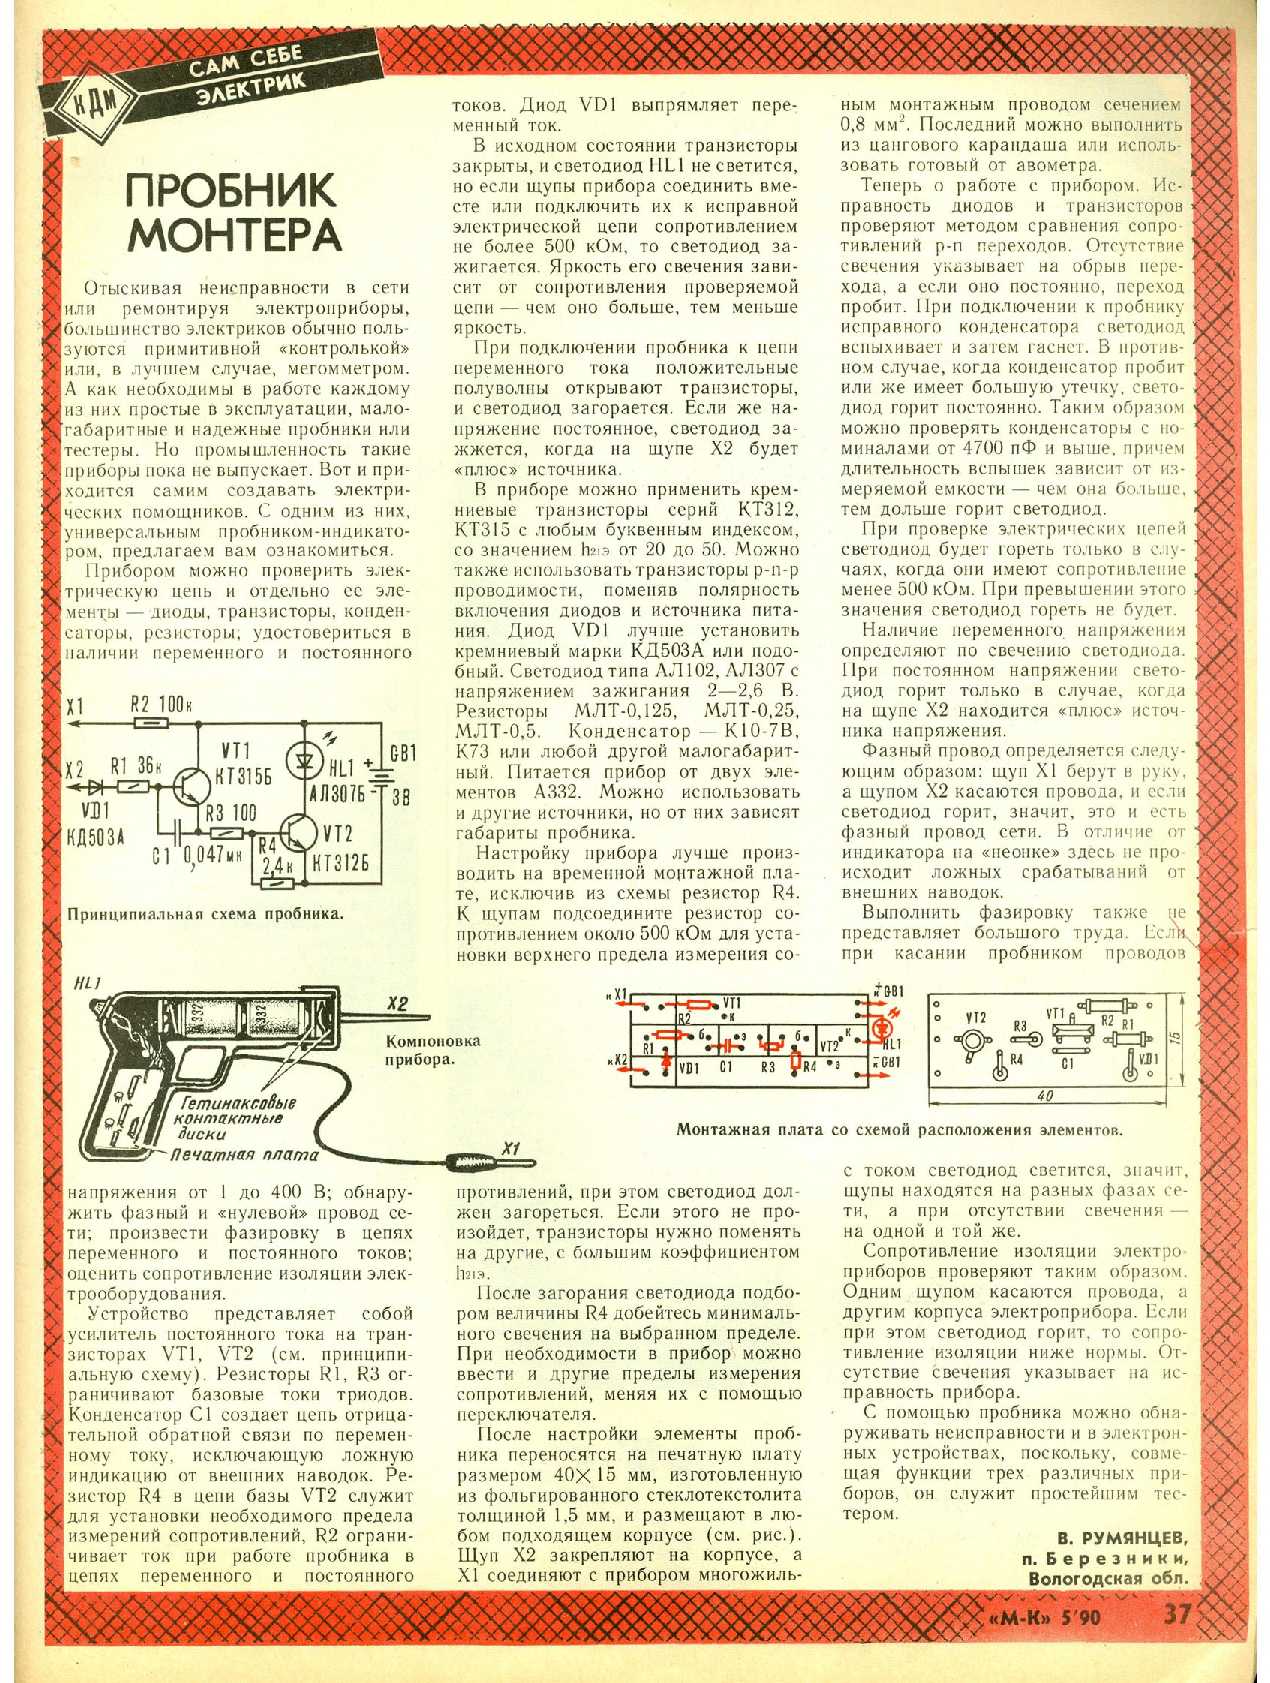 МК 5, 1990, 37 c.